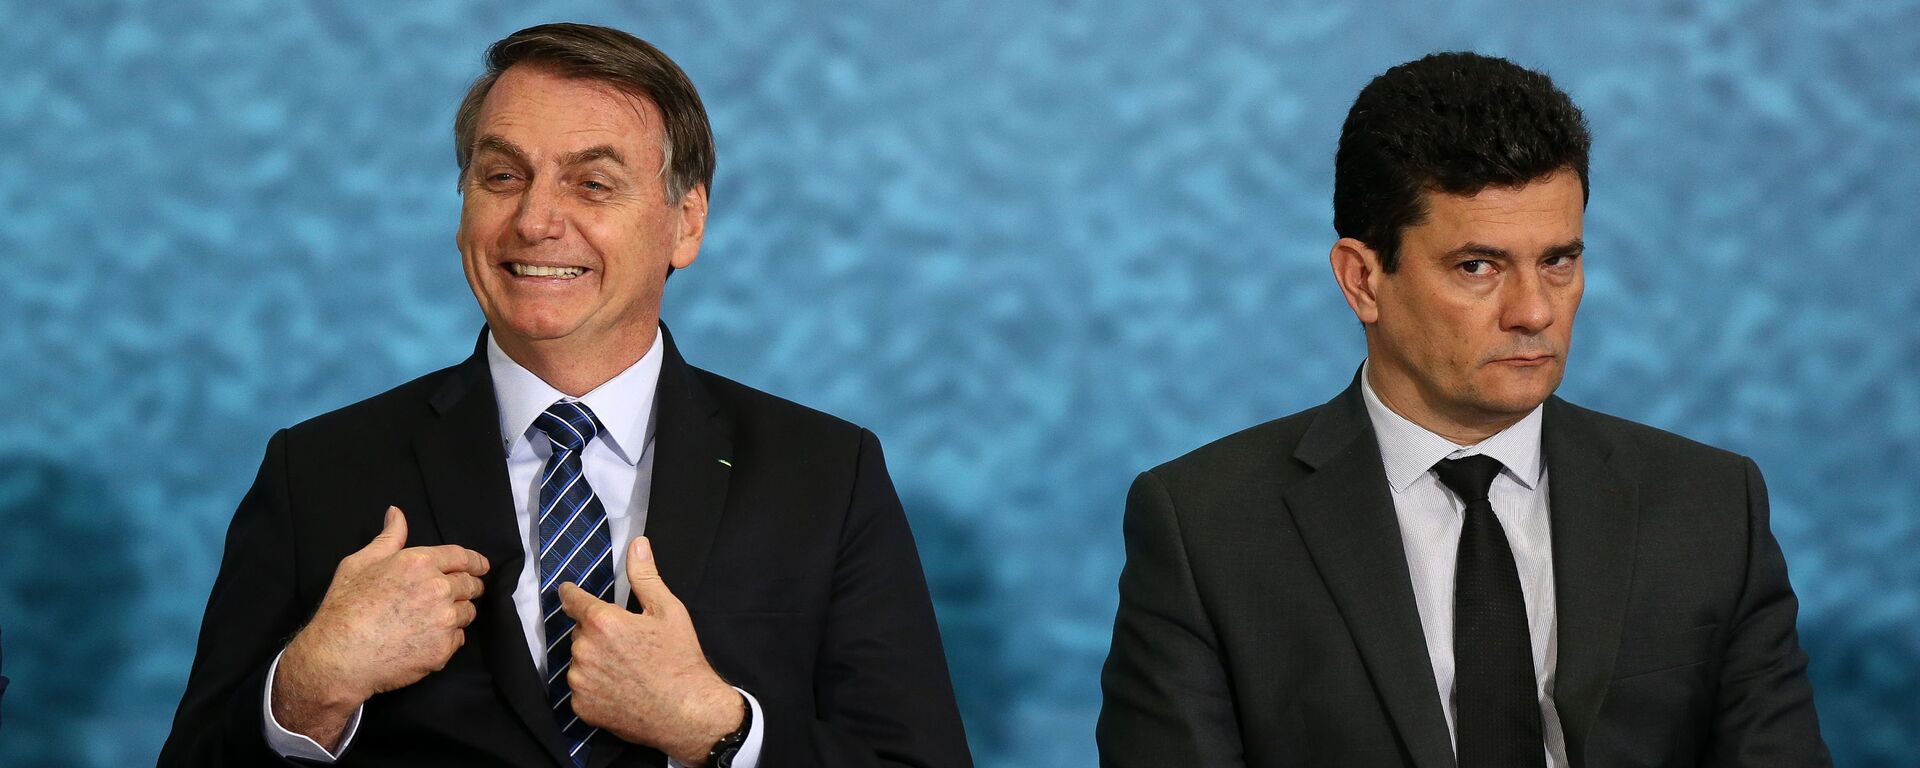 Em Brasília, o presidente Jair Bolsonaro (à esquerda) gesticula ao lado do então ministro da Justiça e Segurança Pública, Sergio Moro (à direita),  durante cerimônia de divulgação do pacote anticrime, em 3 de outubro de 2019 - Sputnik Brasil, 1920, 12.11.2021